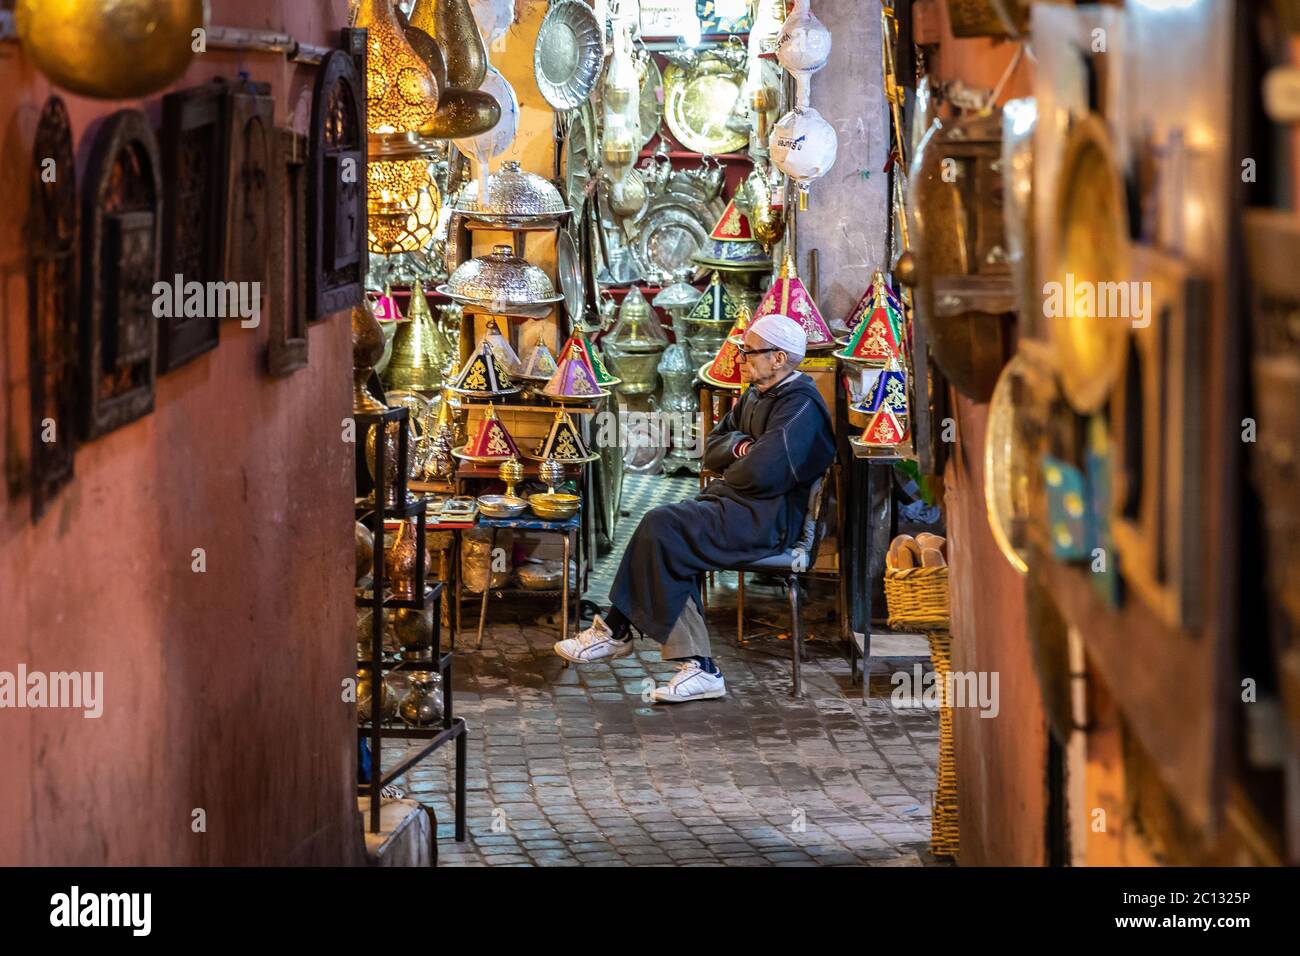 Marrakech, Marocco: Un vicolo stretto all'interno della medina con negozi o souk che vendono illuminazione e oggetti di arredamento per la casa illuminati Foto Stock